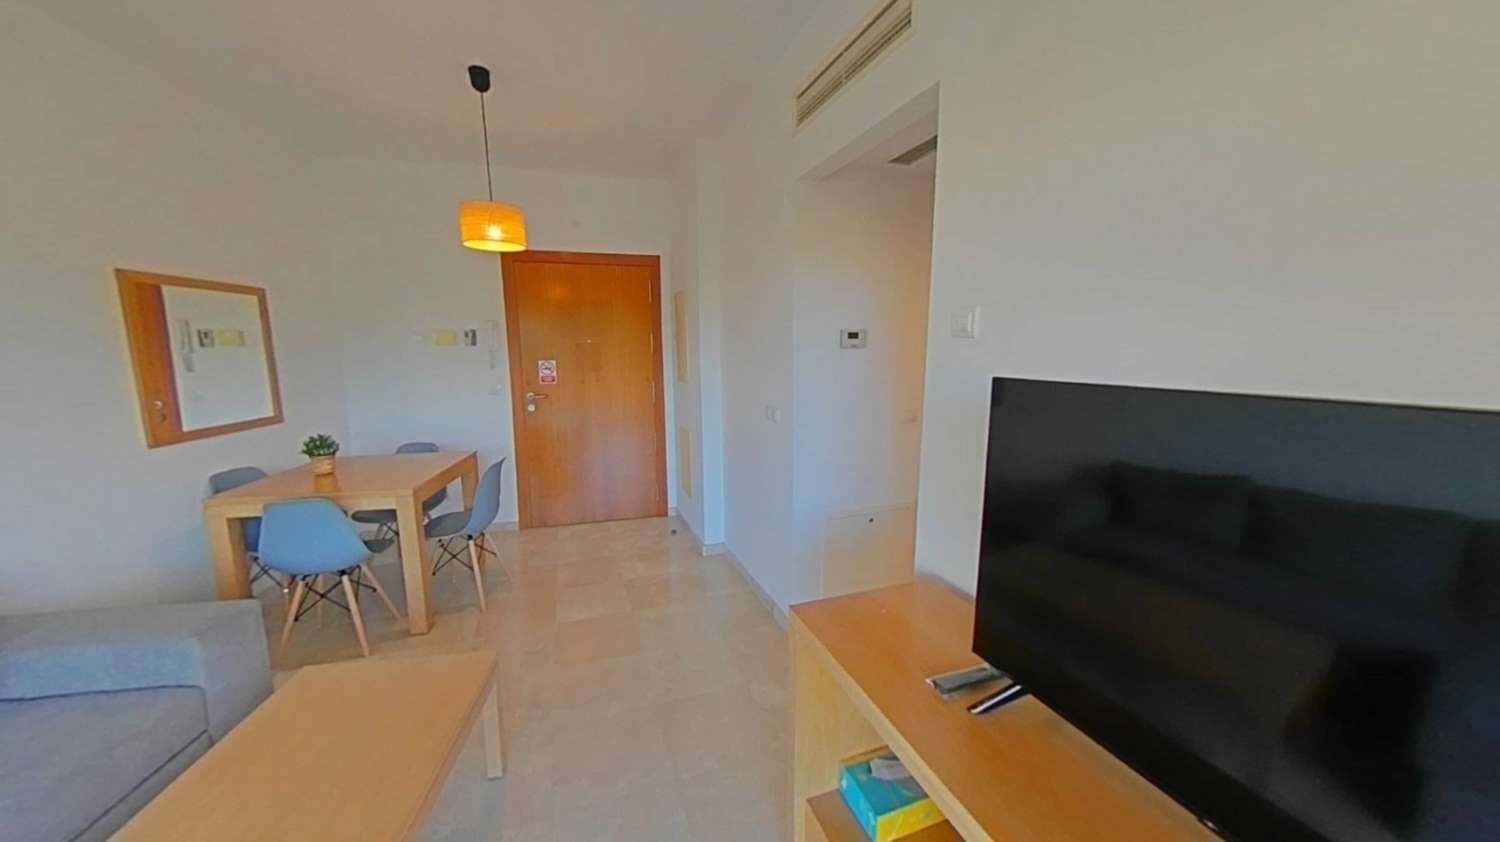 Apartamento de 1 dormitorio con gran terraza, piscina y pistas deportivas en complejo Sol Andalusi